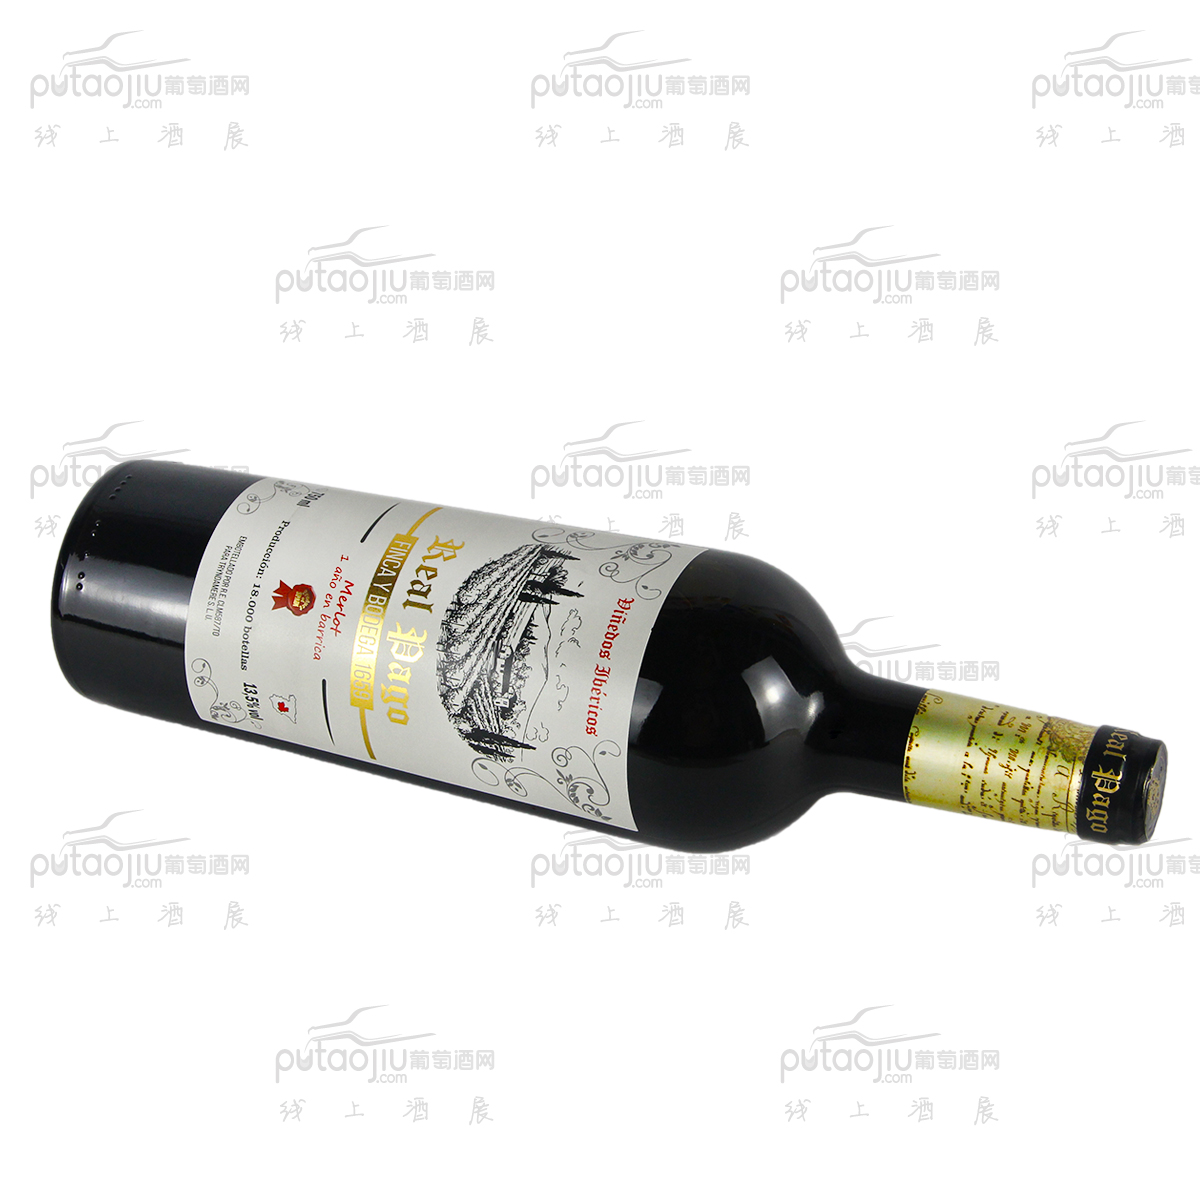 西班牙托莱多卡洛斯三世酒庄梅洛皇室帕戈精选干红葡萄酒